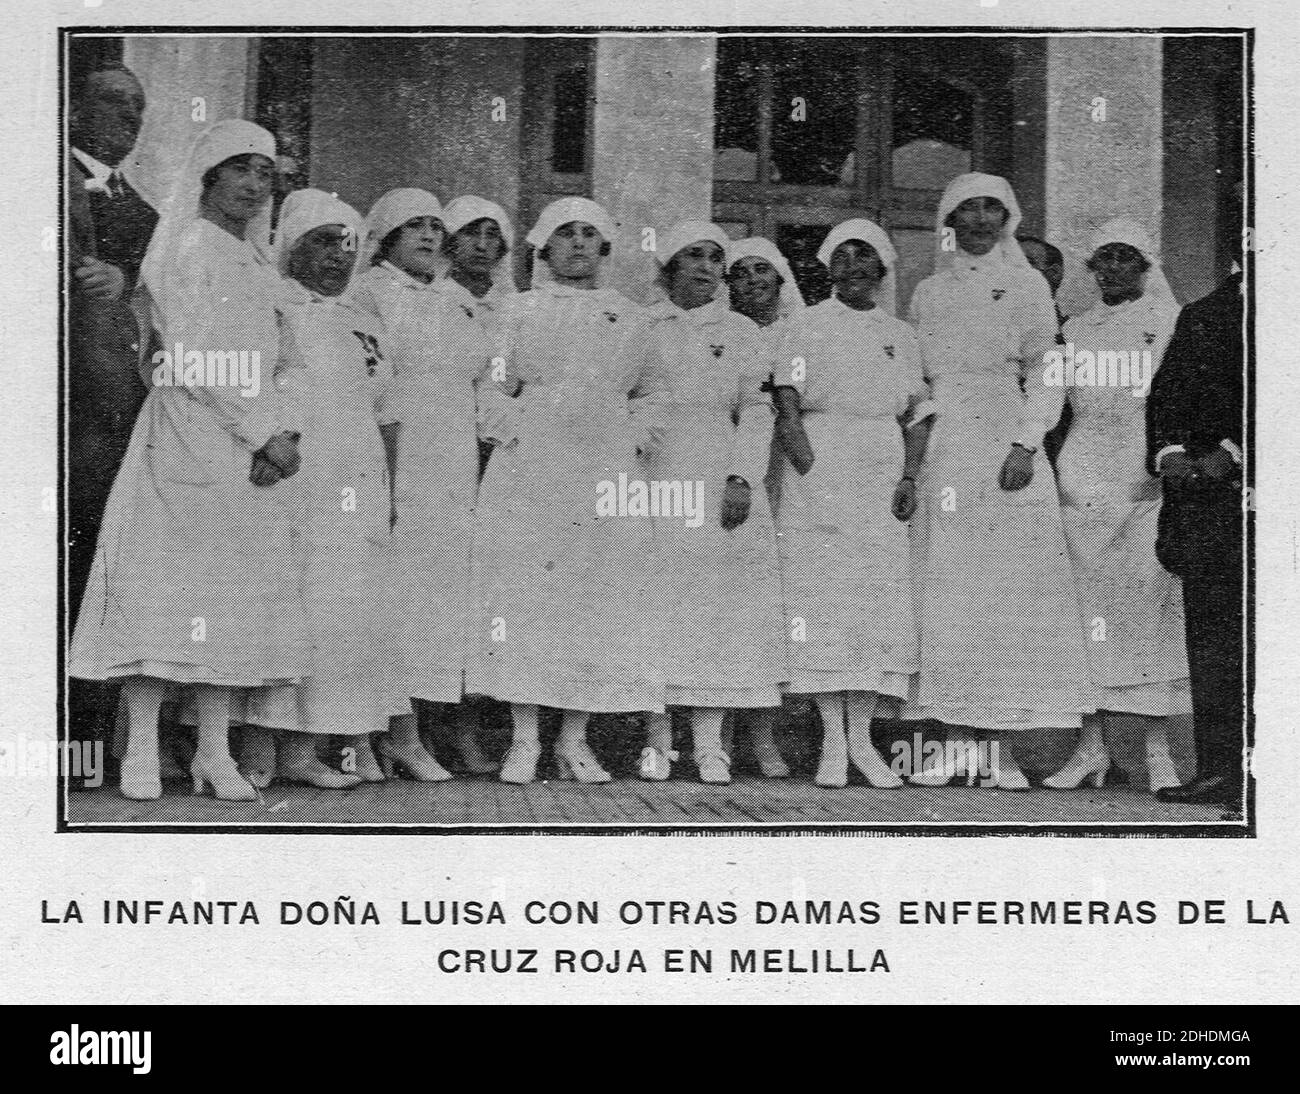 La Infanta Doña Luisa con otras damas enfermeras de la Cruz Roja en Melilla, (Grupo de Escuelas Mixtas Alfonso XIII), AGuichot110511071921 0100 (39293281312). Stock Photo